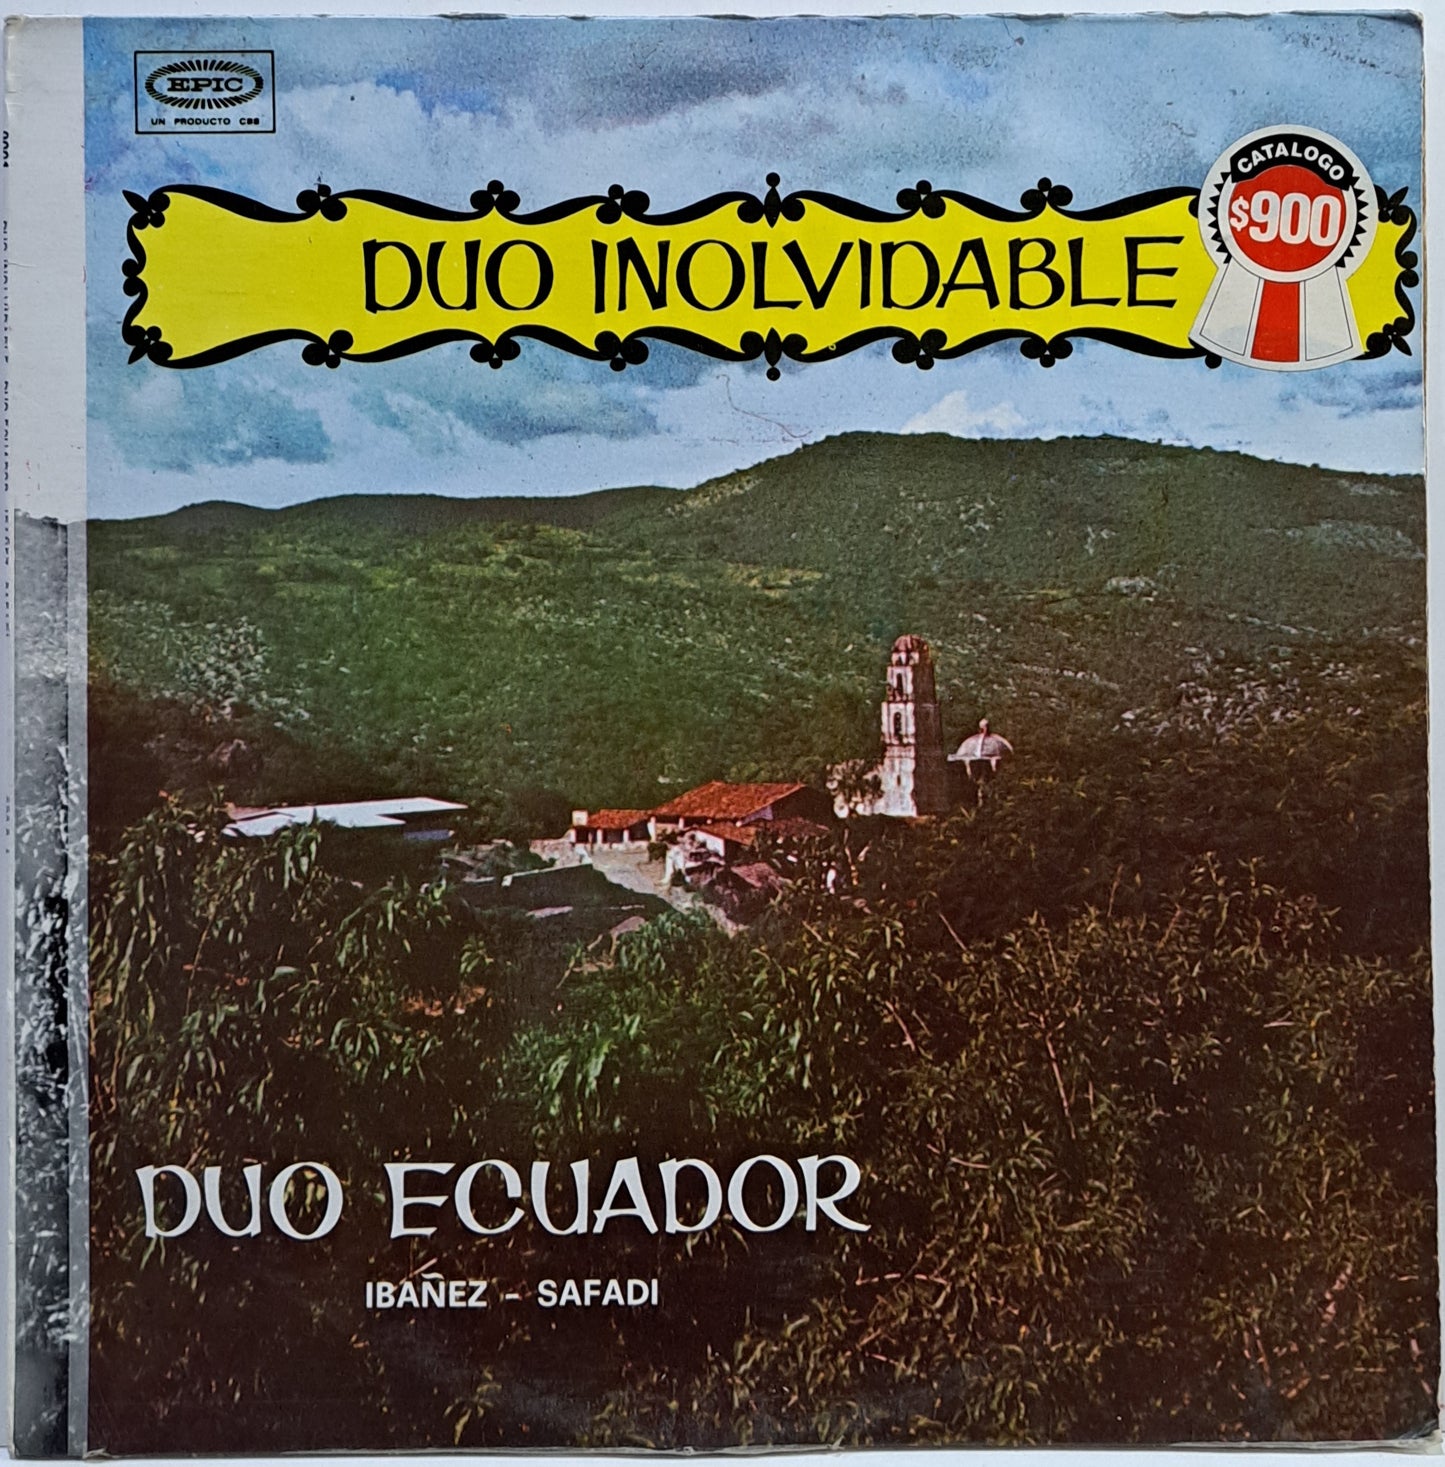 DUO ECUADOR - DUO INOLVIDABLE  LP